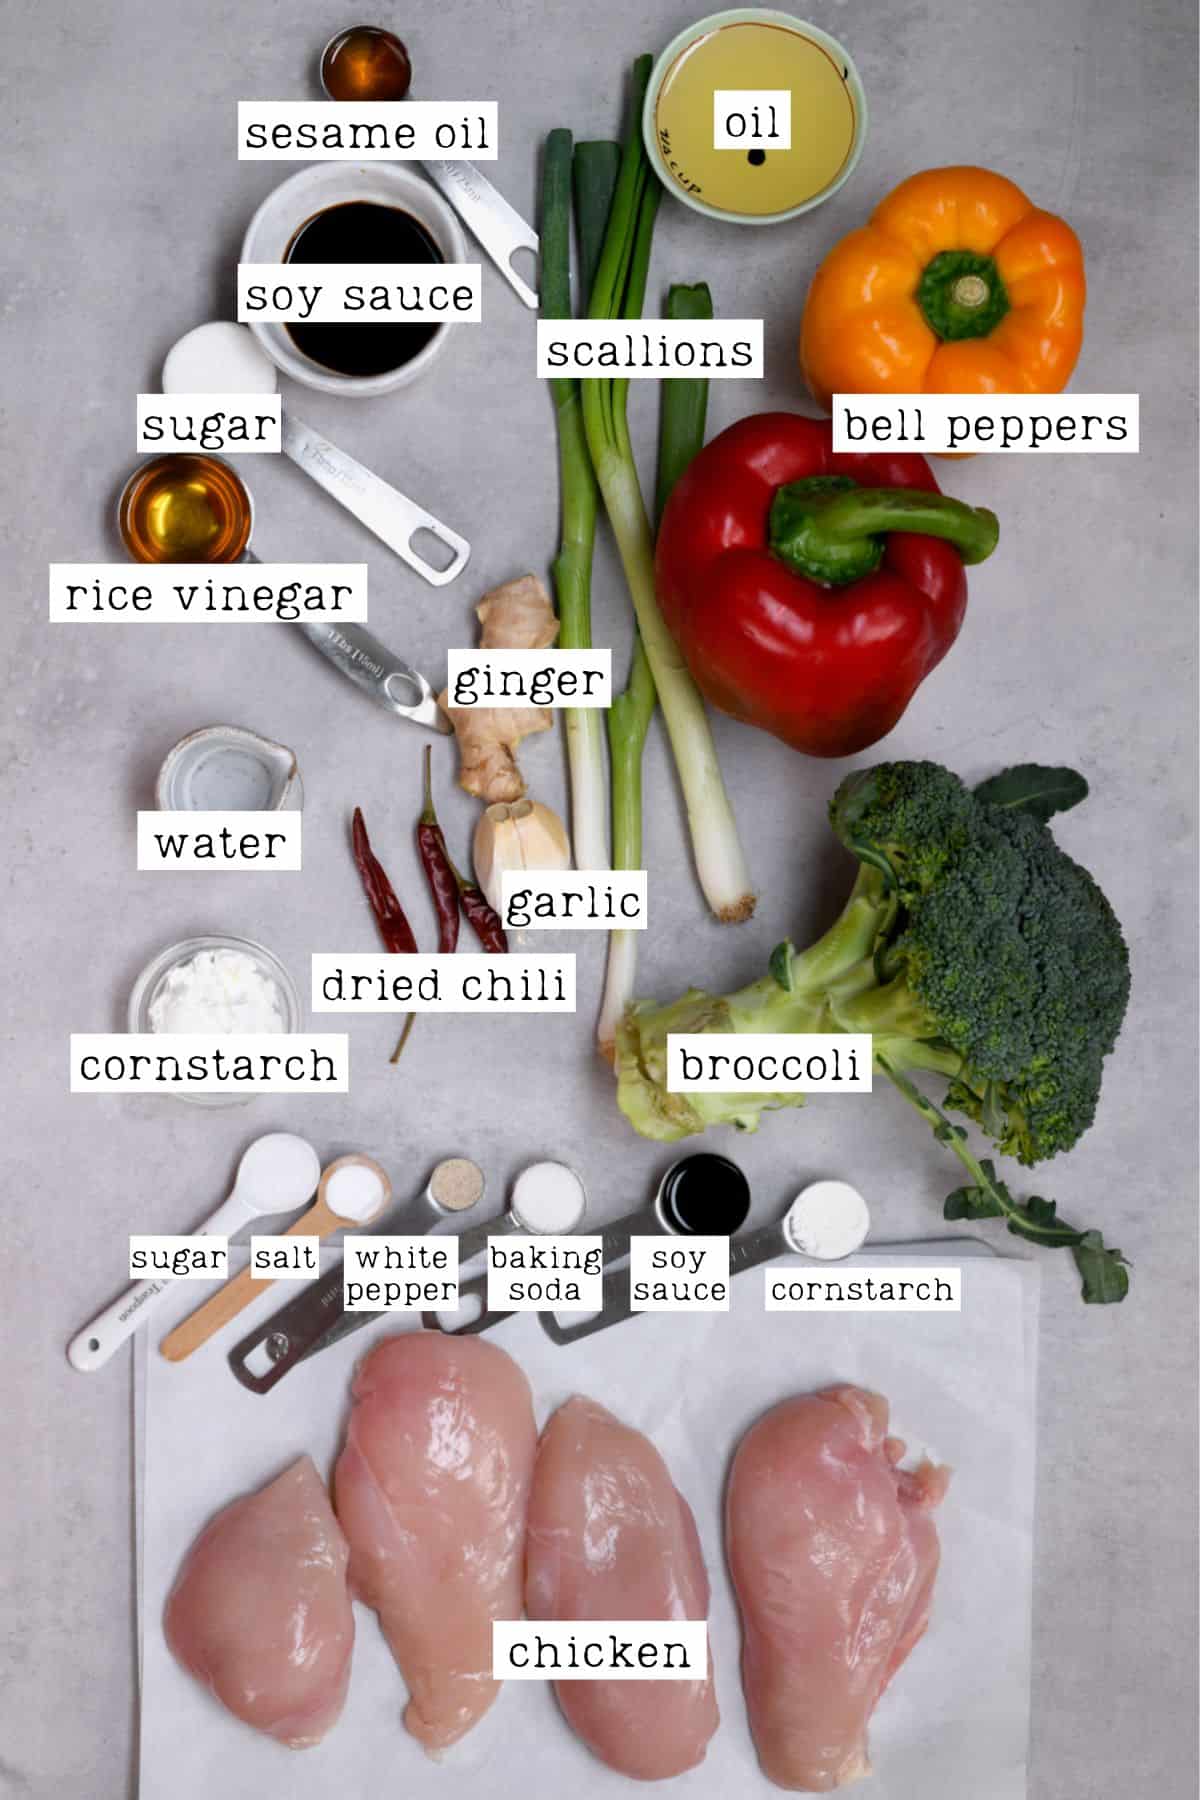 Ingredients for chicken stir fry